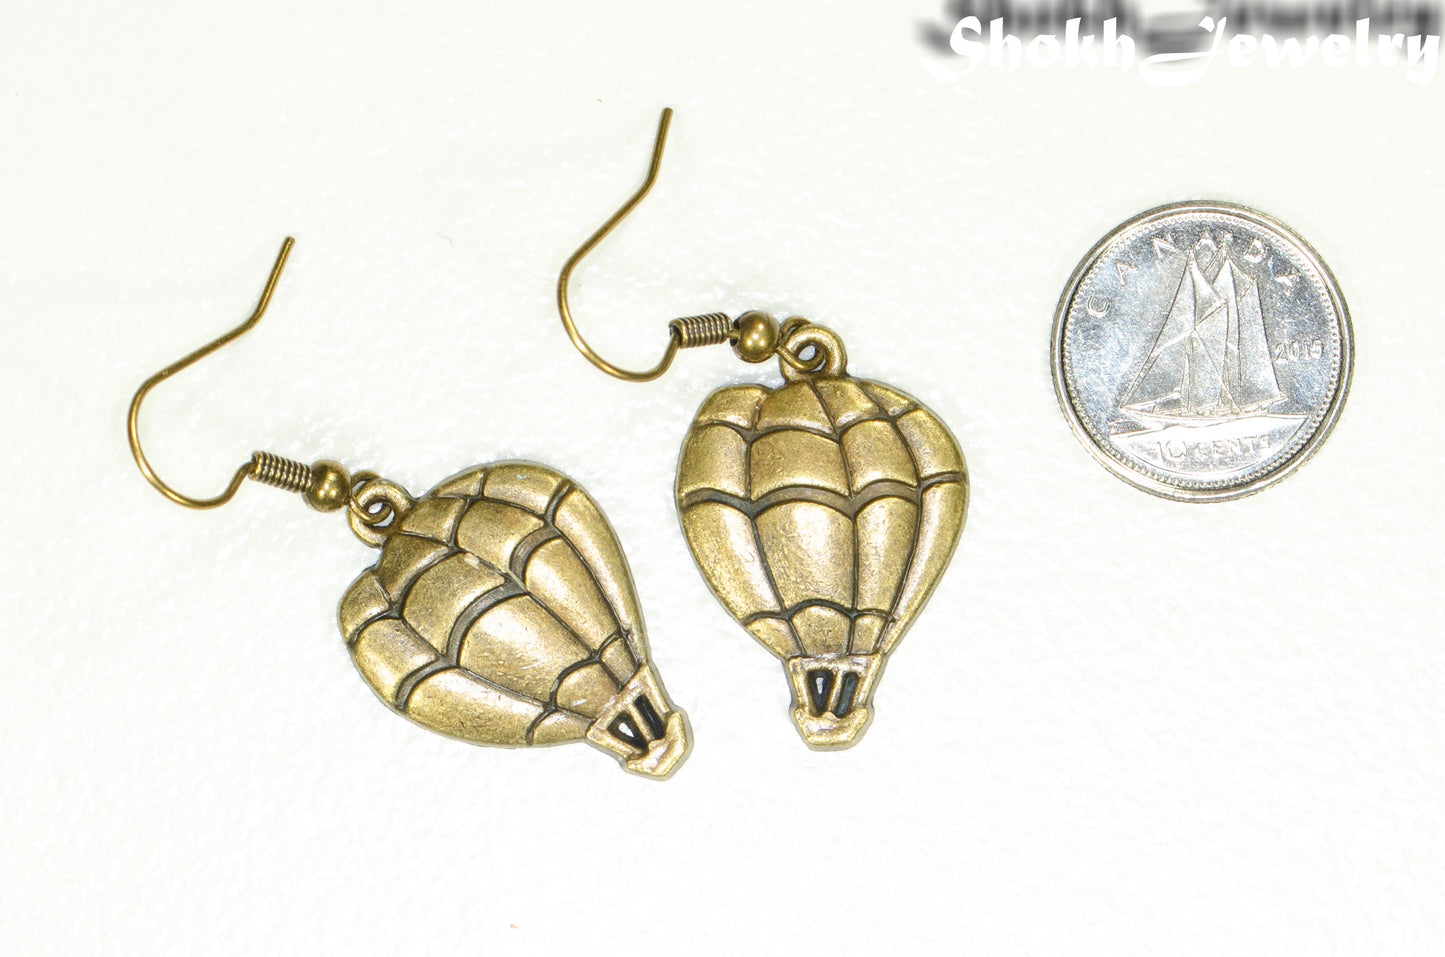 Antique Bronze Hot Air Balloon Charm Earrings beside a dime.